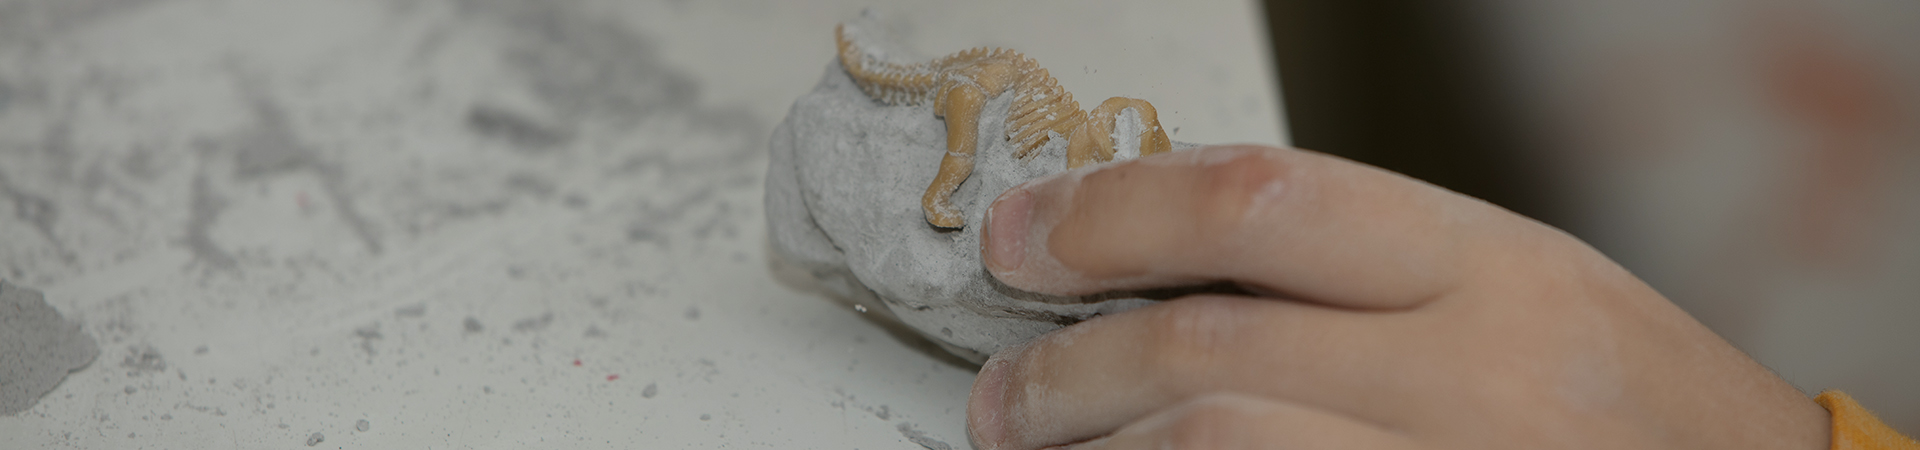 изображение образовательной игры по поиску окаменелостей для маленького археолога, где копают детские руки